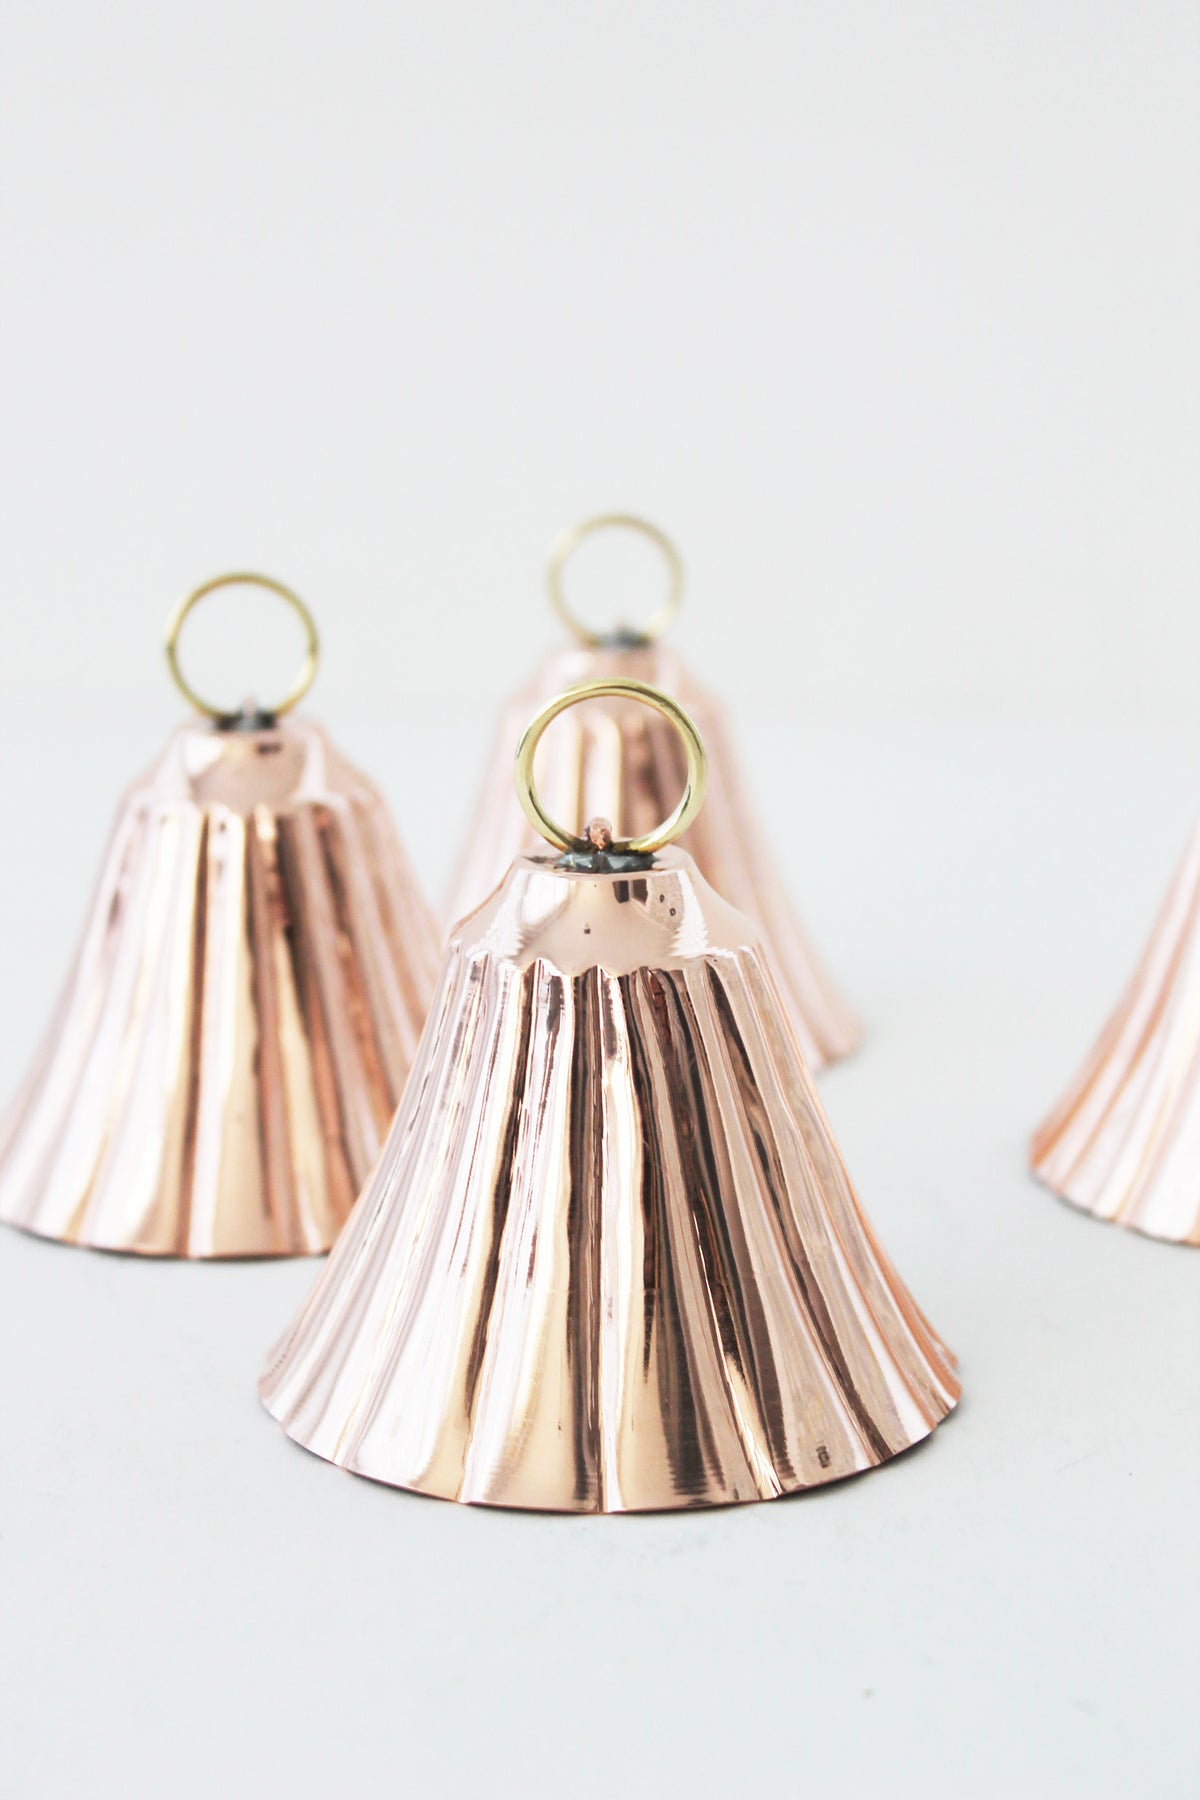 CMK Copper Bell Ornaments, Set of 4